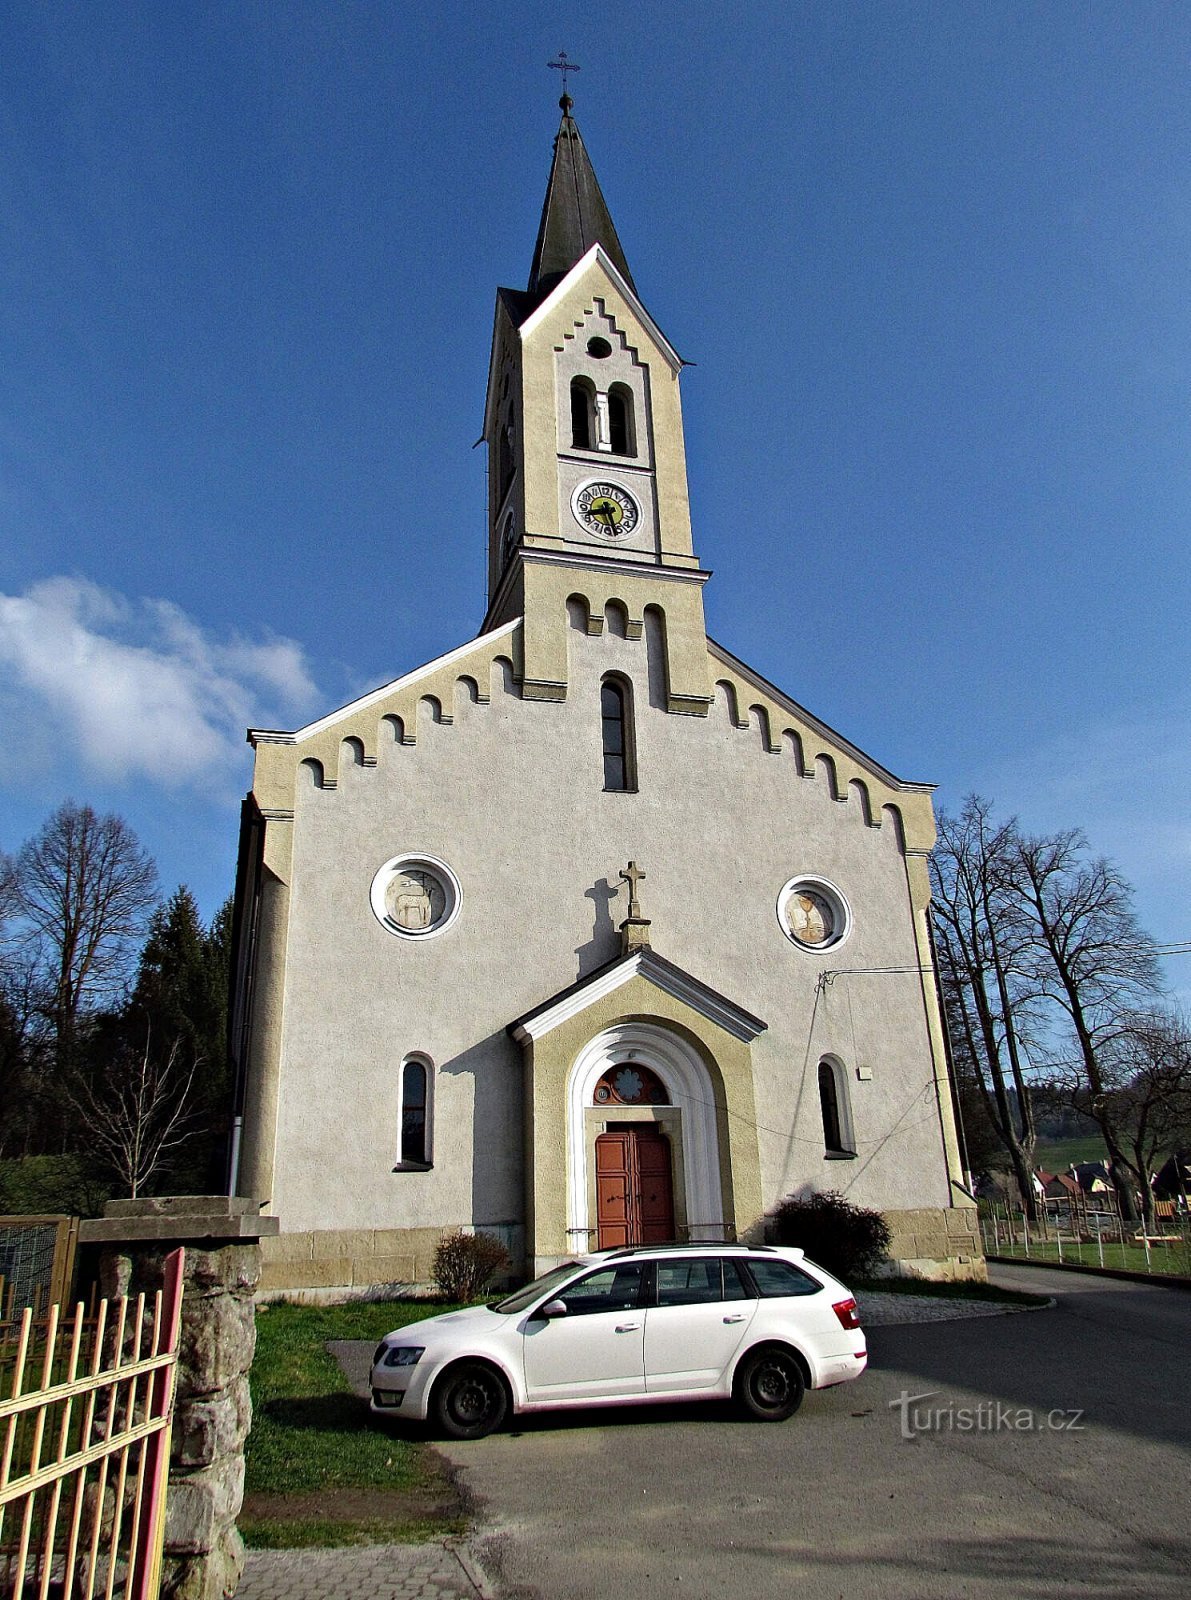 Ratiboř - evankelinen kirkko